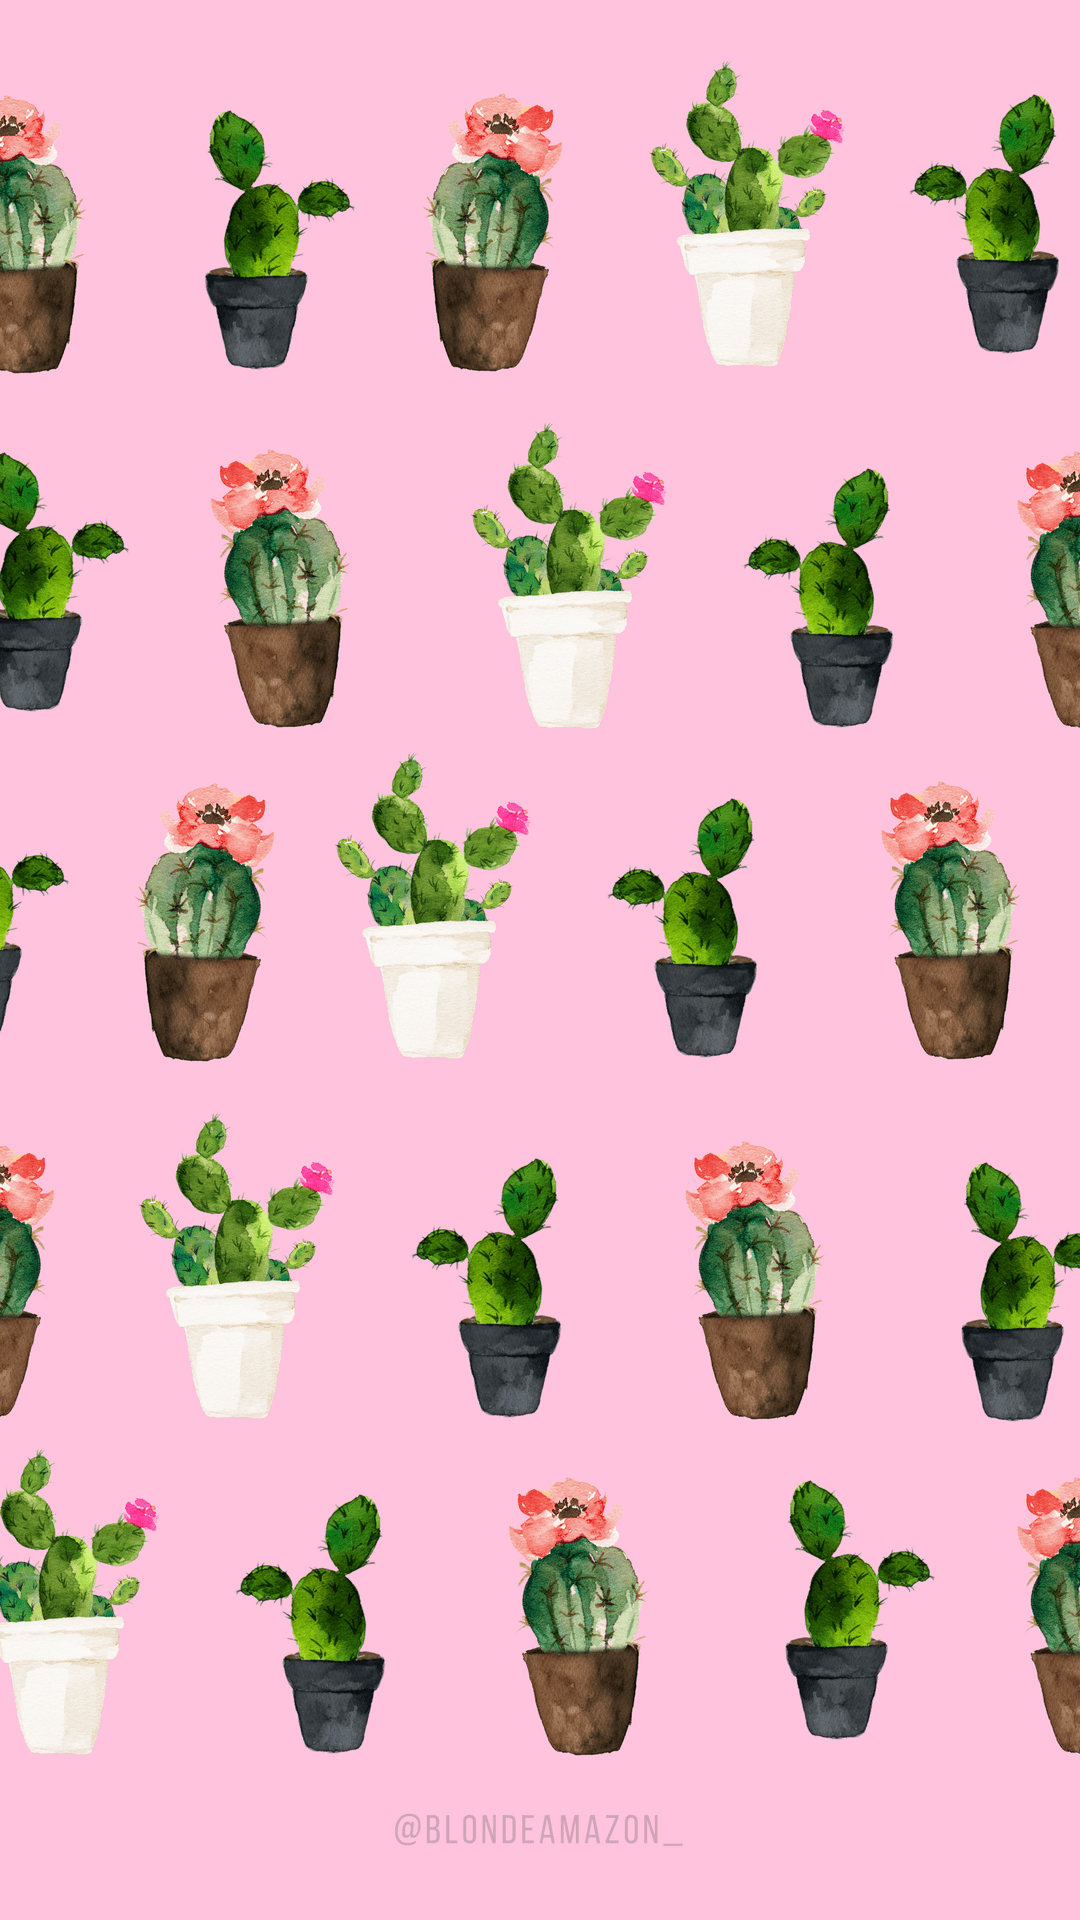 Download Watercolor Cactus Wallpapers - Top Free Watercolor Cactus ...